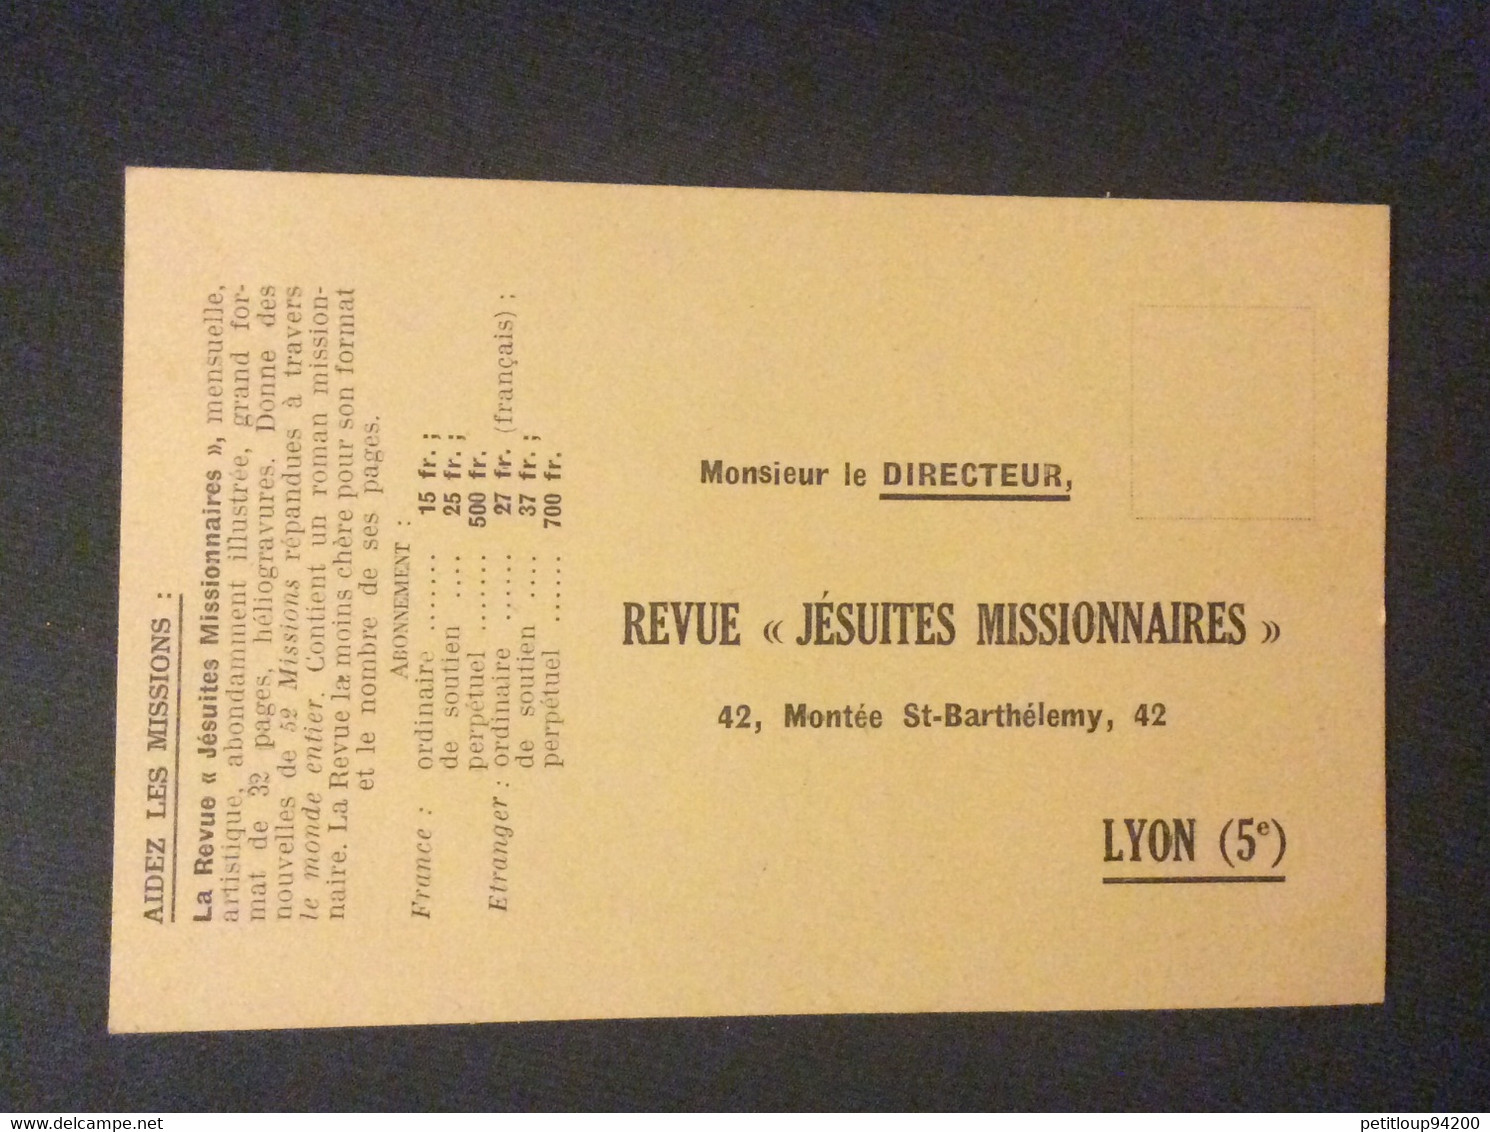 COUPON RÉPONSE  Revue “Jesuites Missionnaires”  LYON  Annee 1935 - Reply Coupons